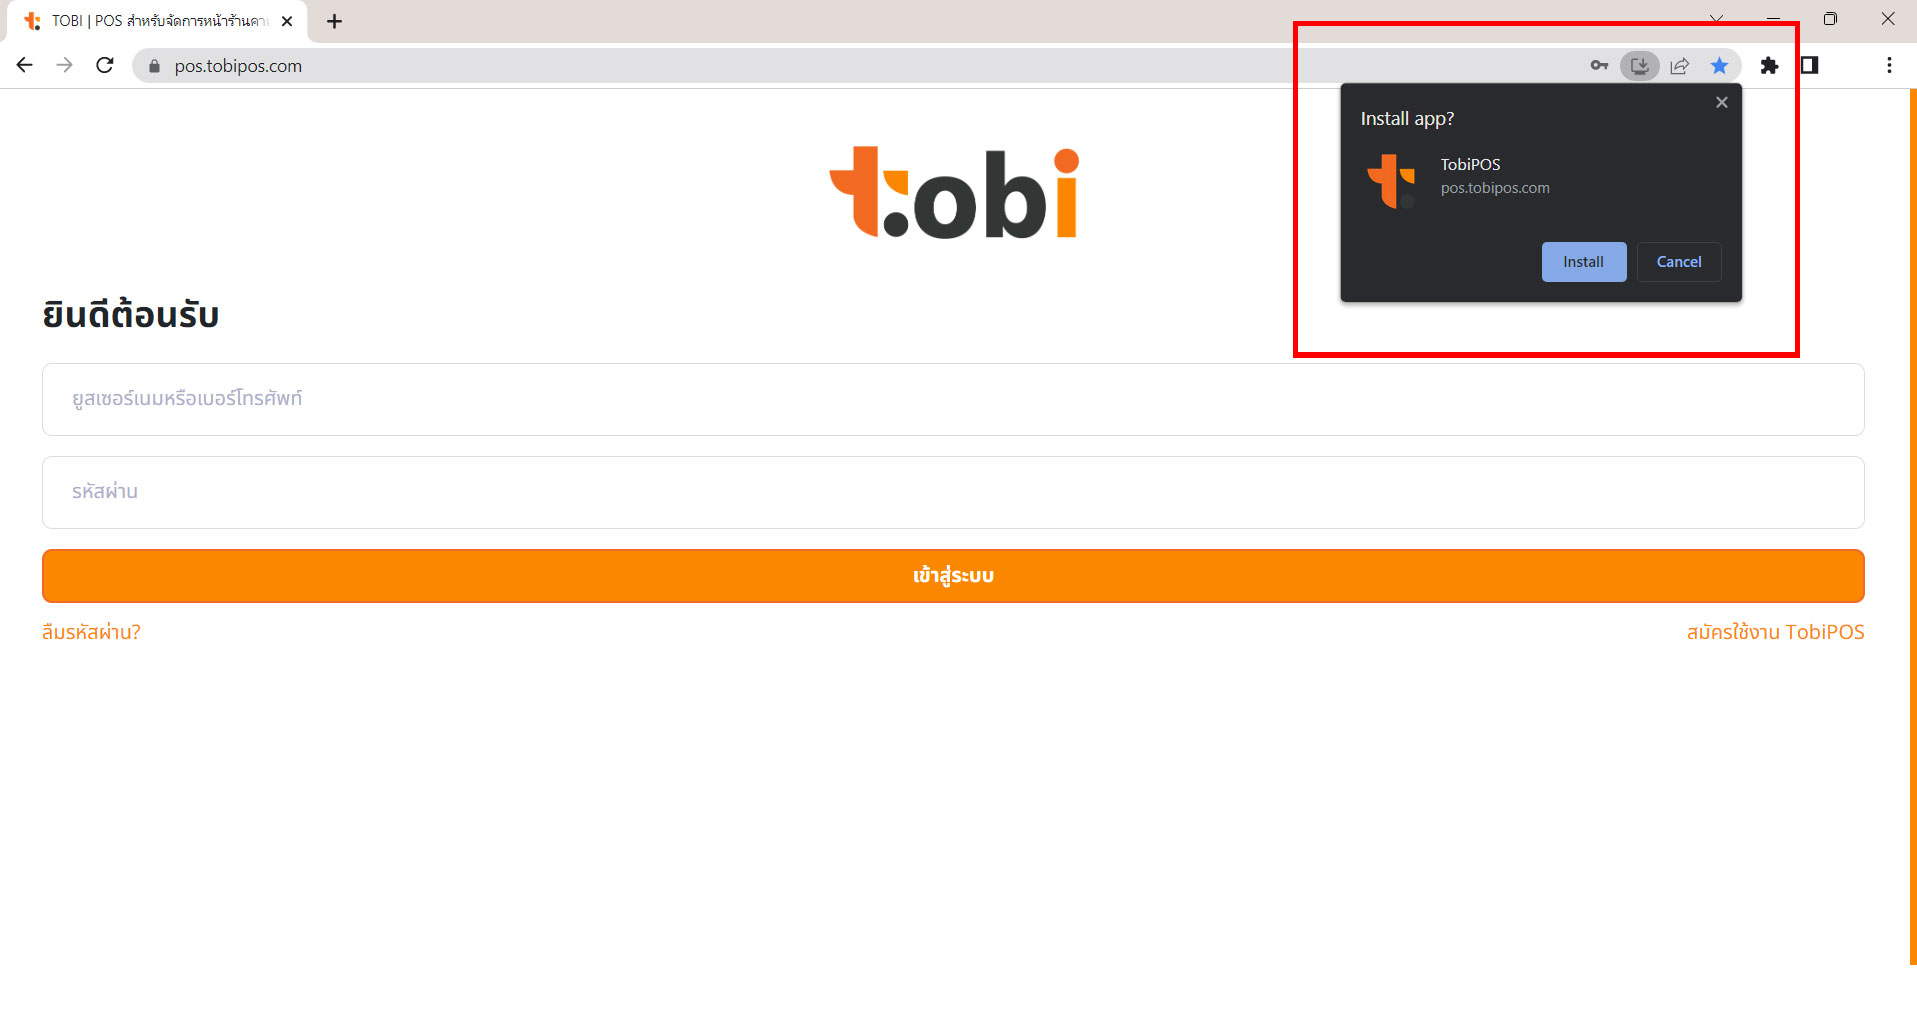 tobipos สร้างทางลัดเข้าสู่ระบบ Tobi POS